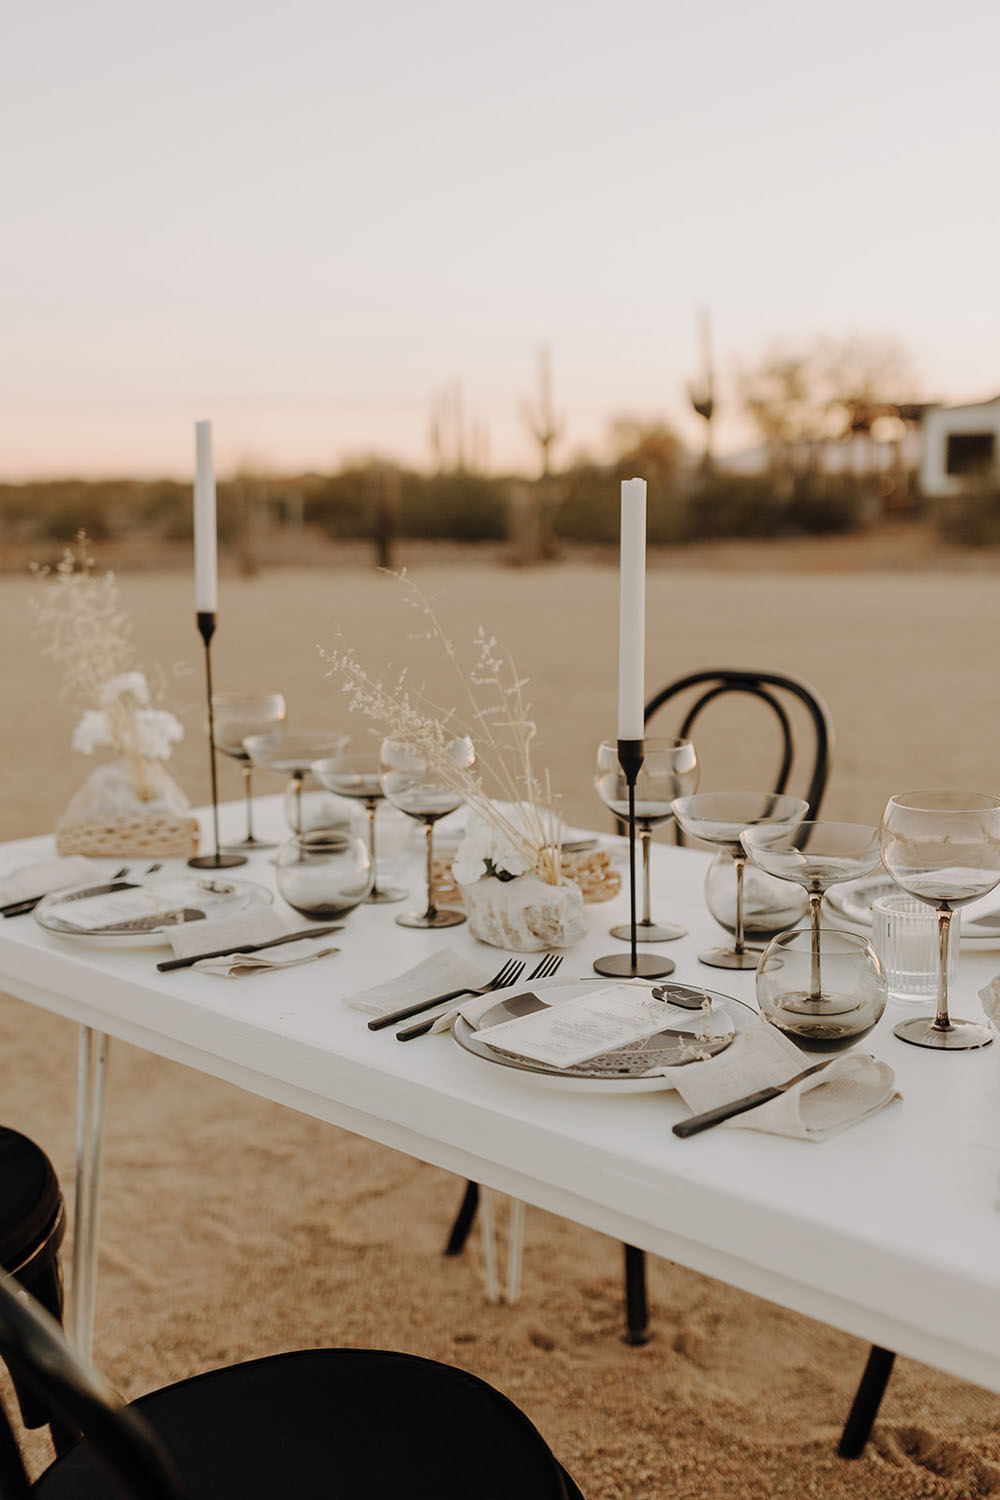 Modern "Meet me in the Desert" black & white wedding ideas